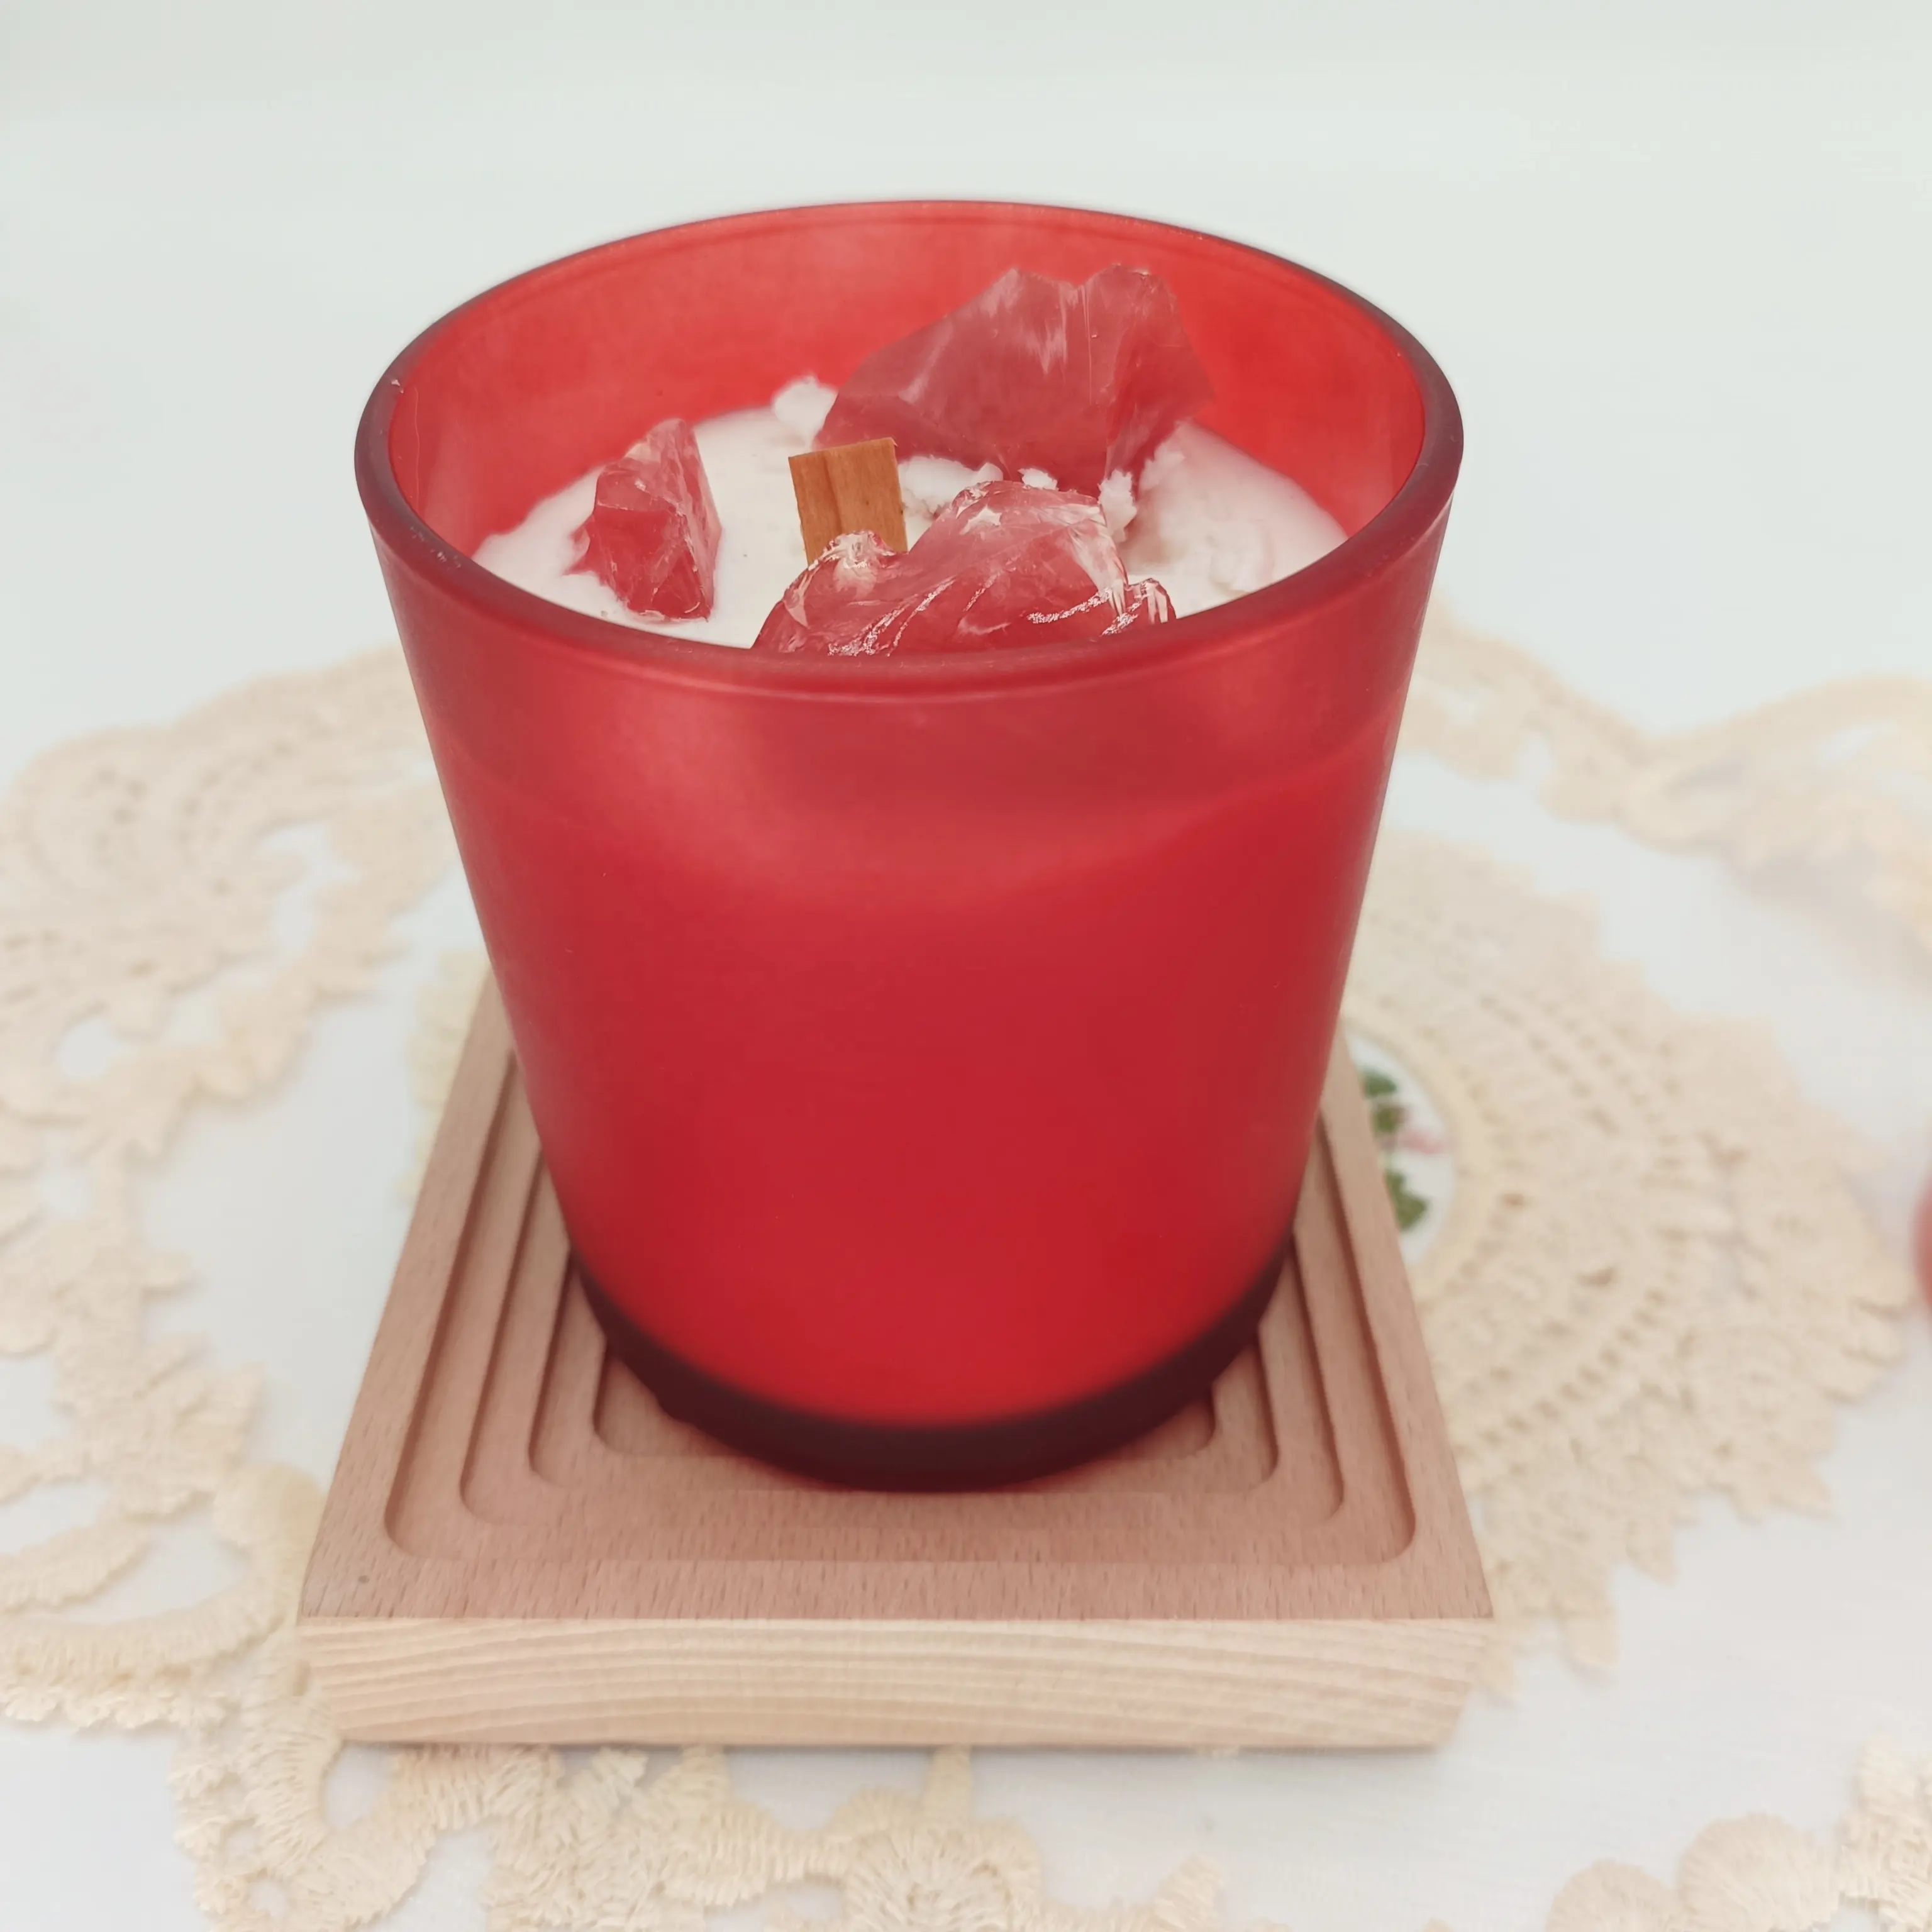 Nuovissima vendita calda barattolo di vetro rosso profumato con candela vetro smerigliato vasetto di soia cera aromaterapia candela con cristalli